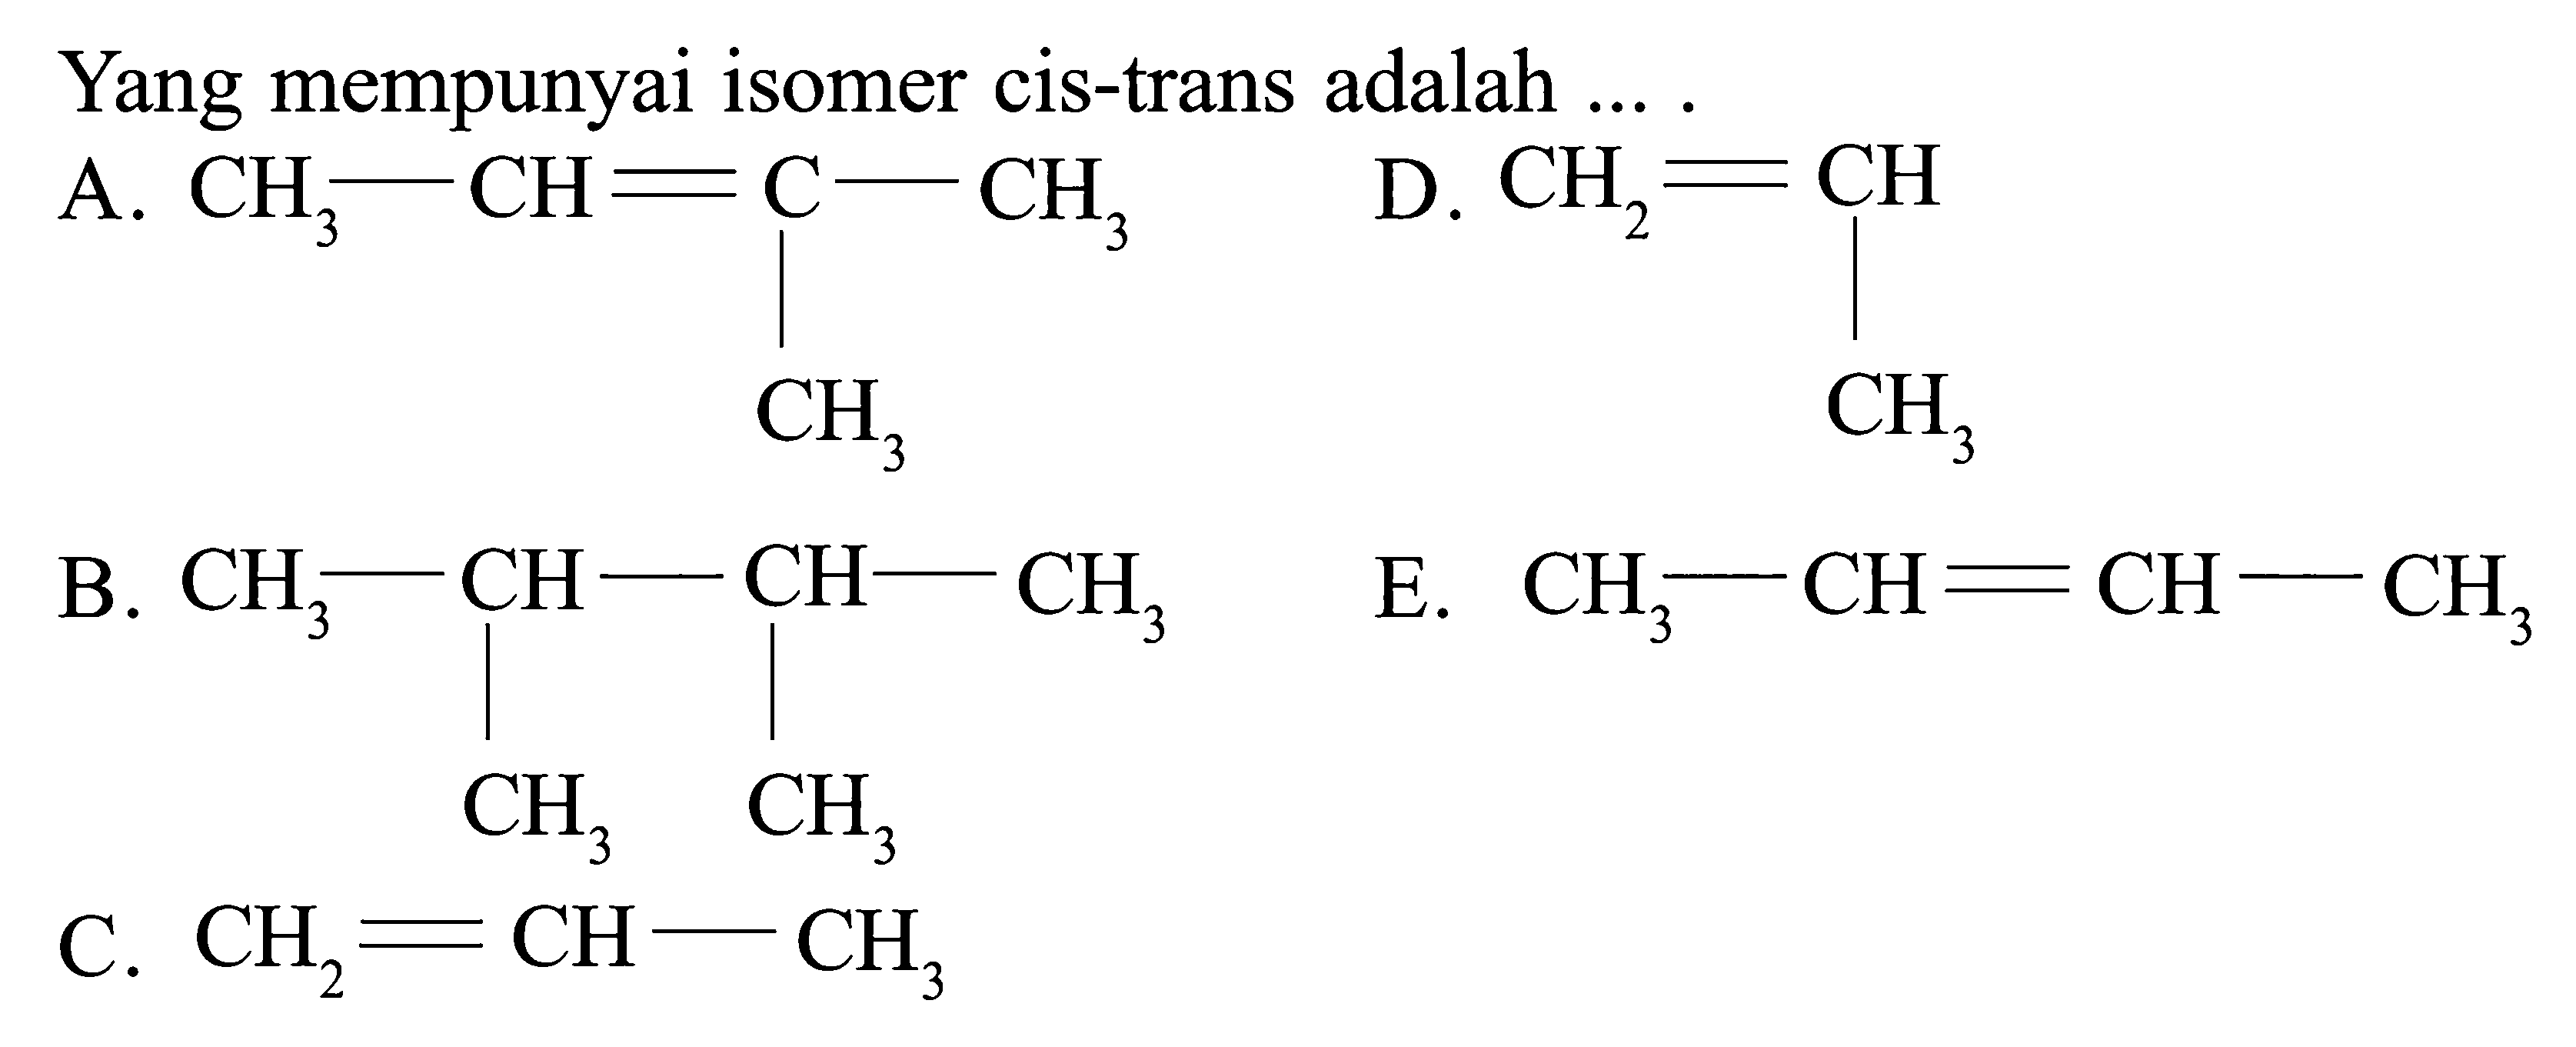 Yang mempunyai isomer cis-trans adalah ....